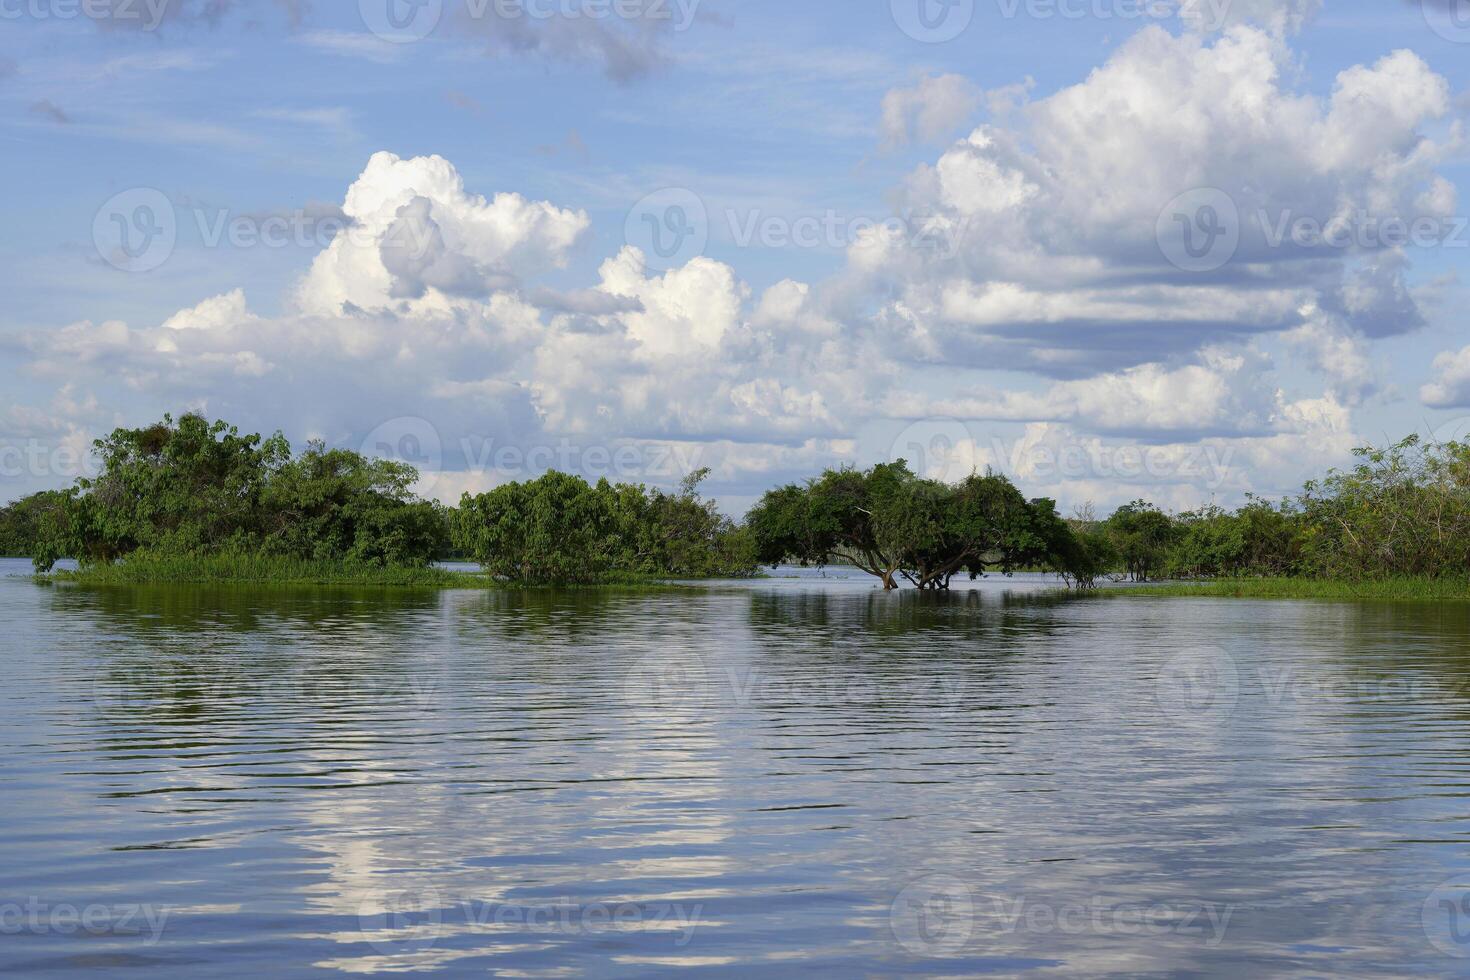 inundado floresta em a abacaxis rio, a Amazonas afluente, amazonas estado, Brasil foto